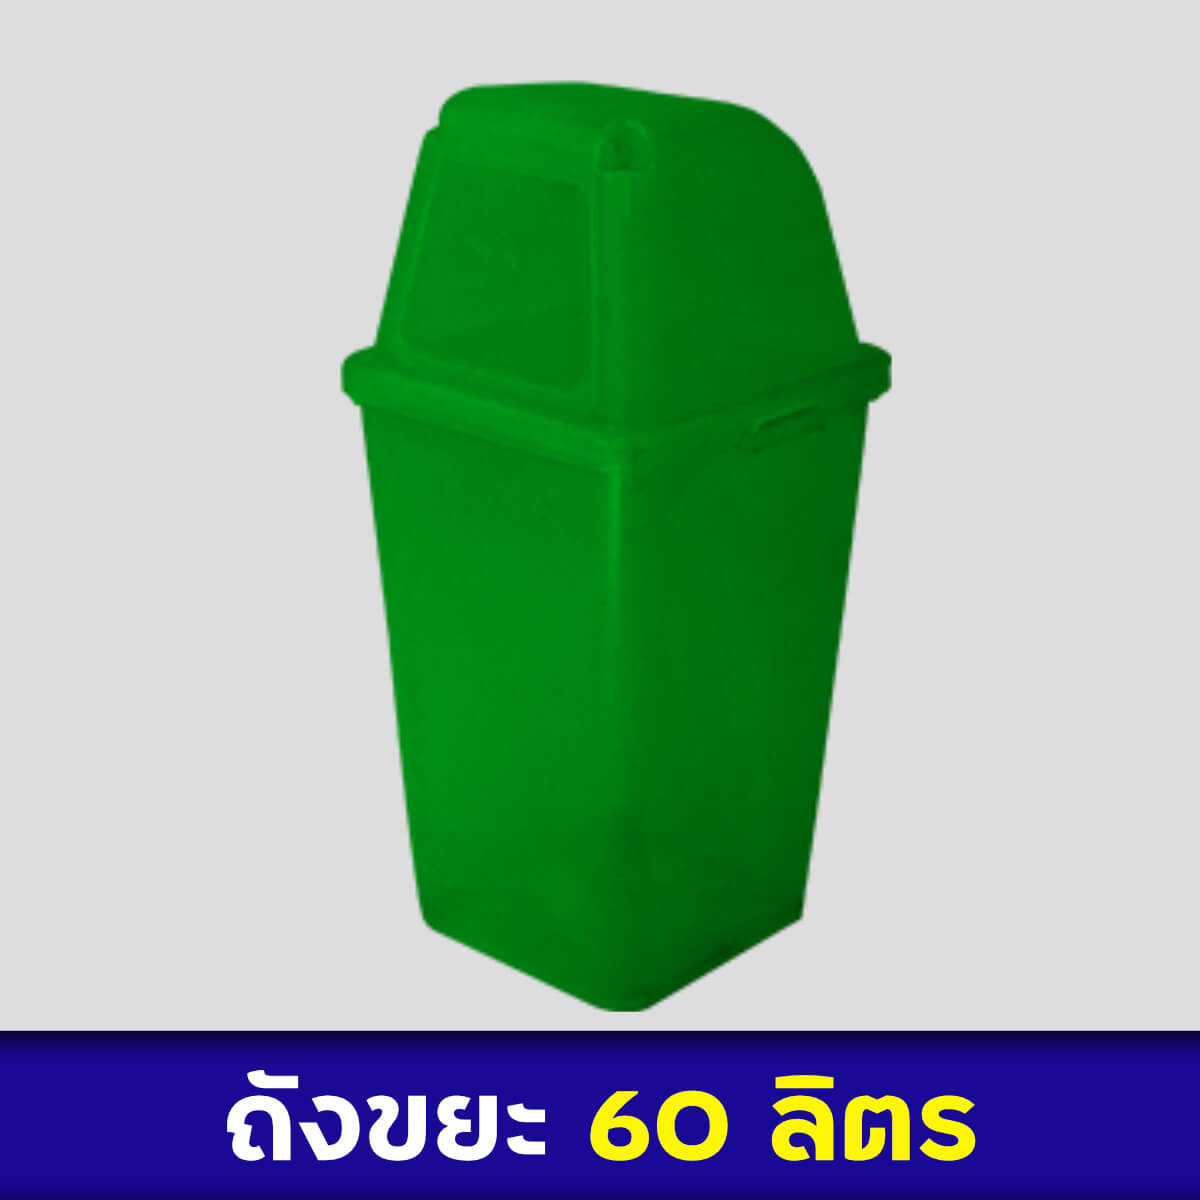 ถังขยะสีเขียว 60ลิตร